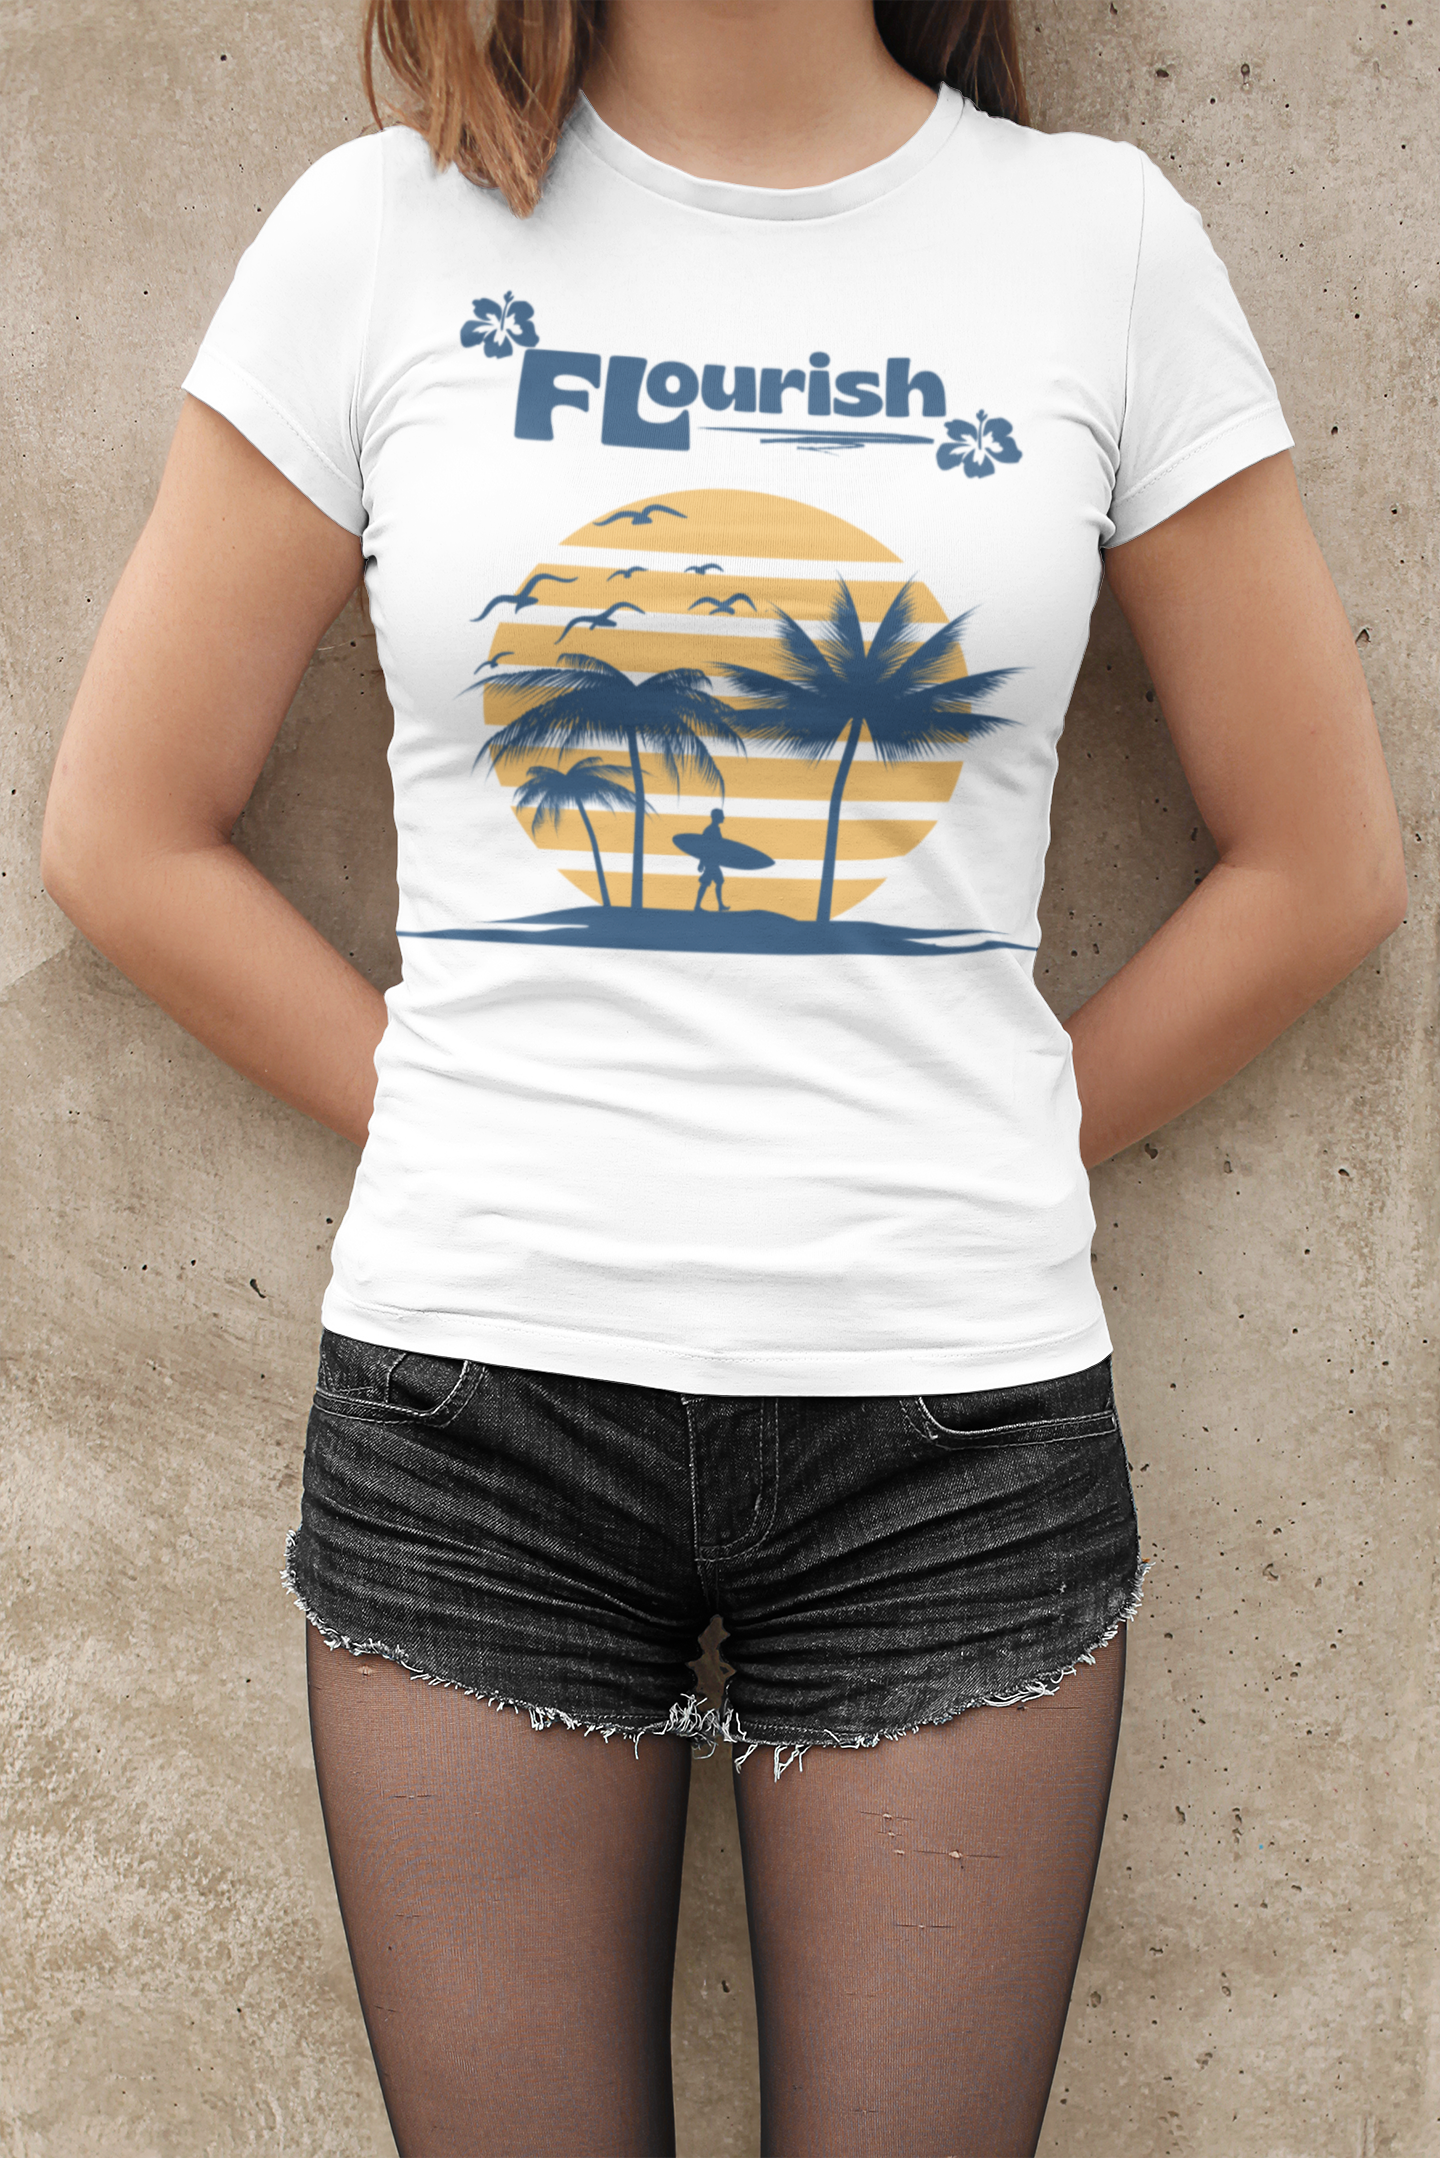 Surfs Up - Flourish Clothing Co